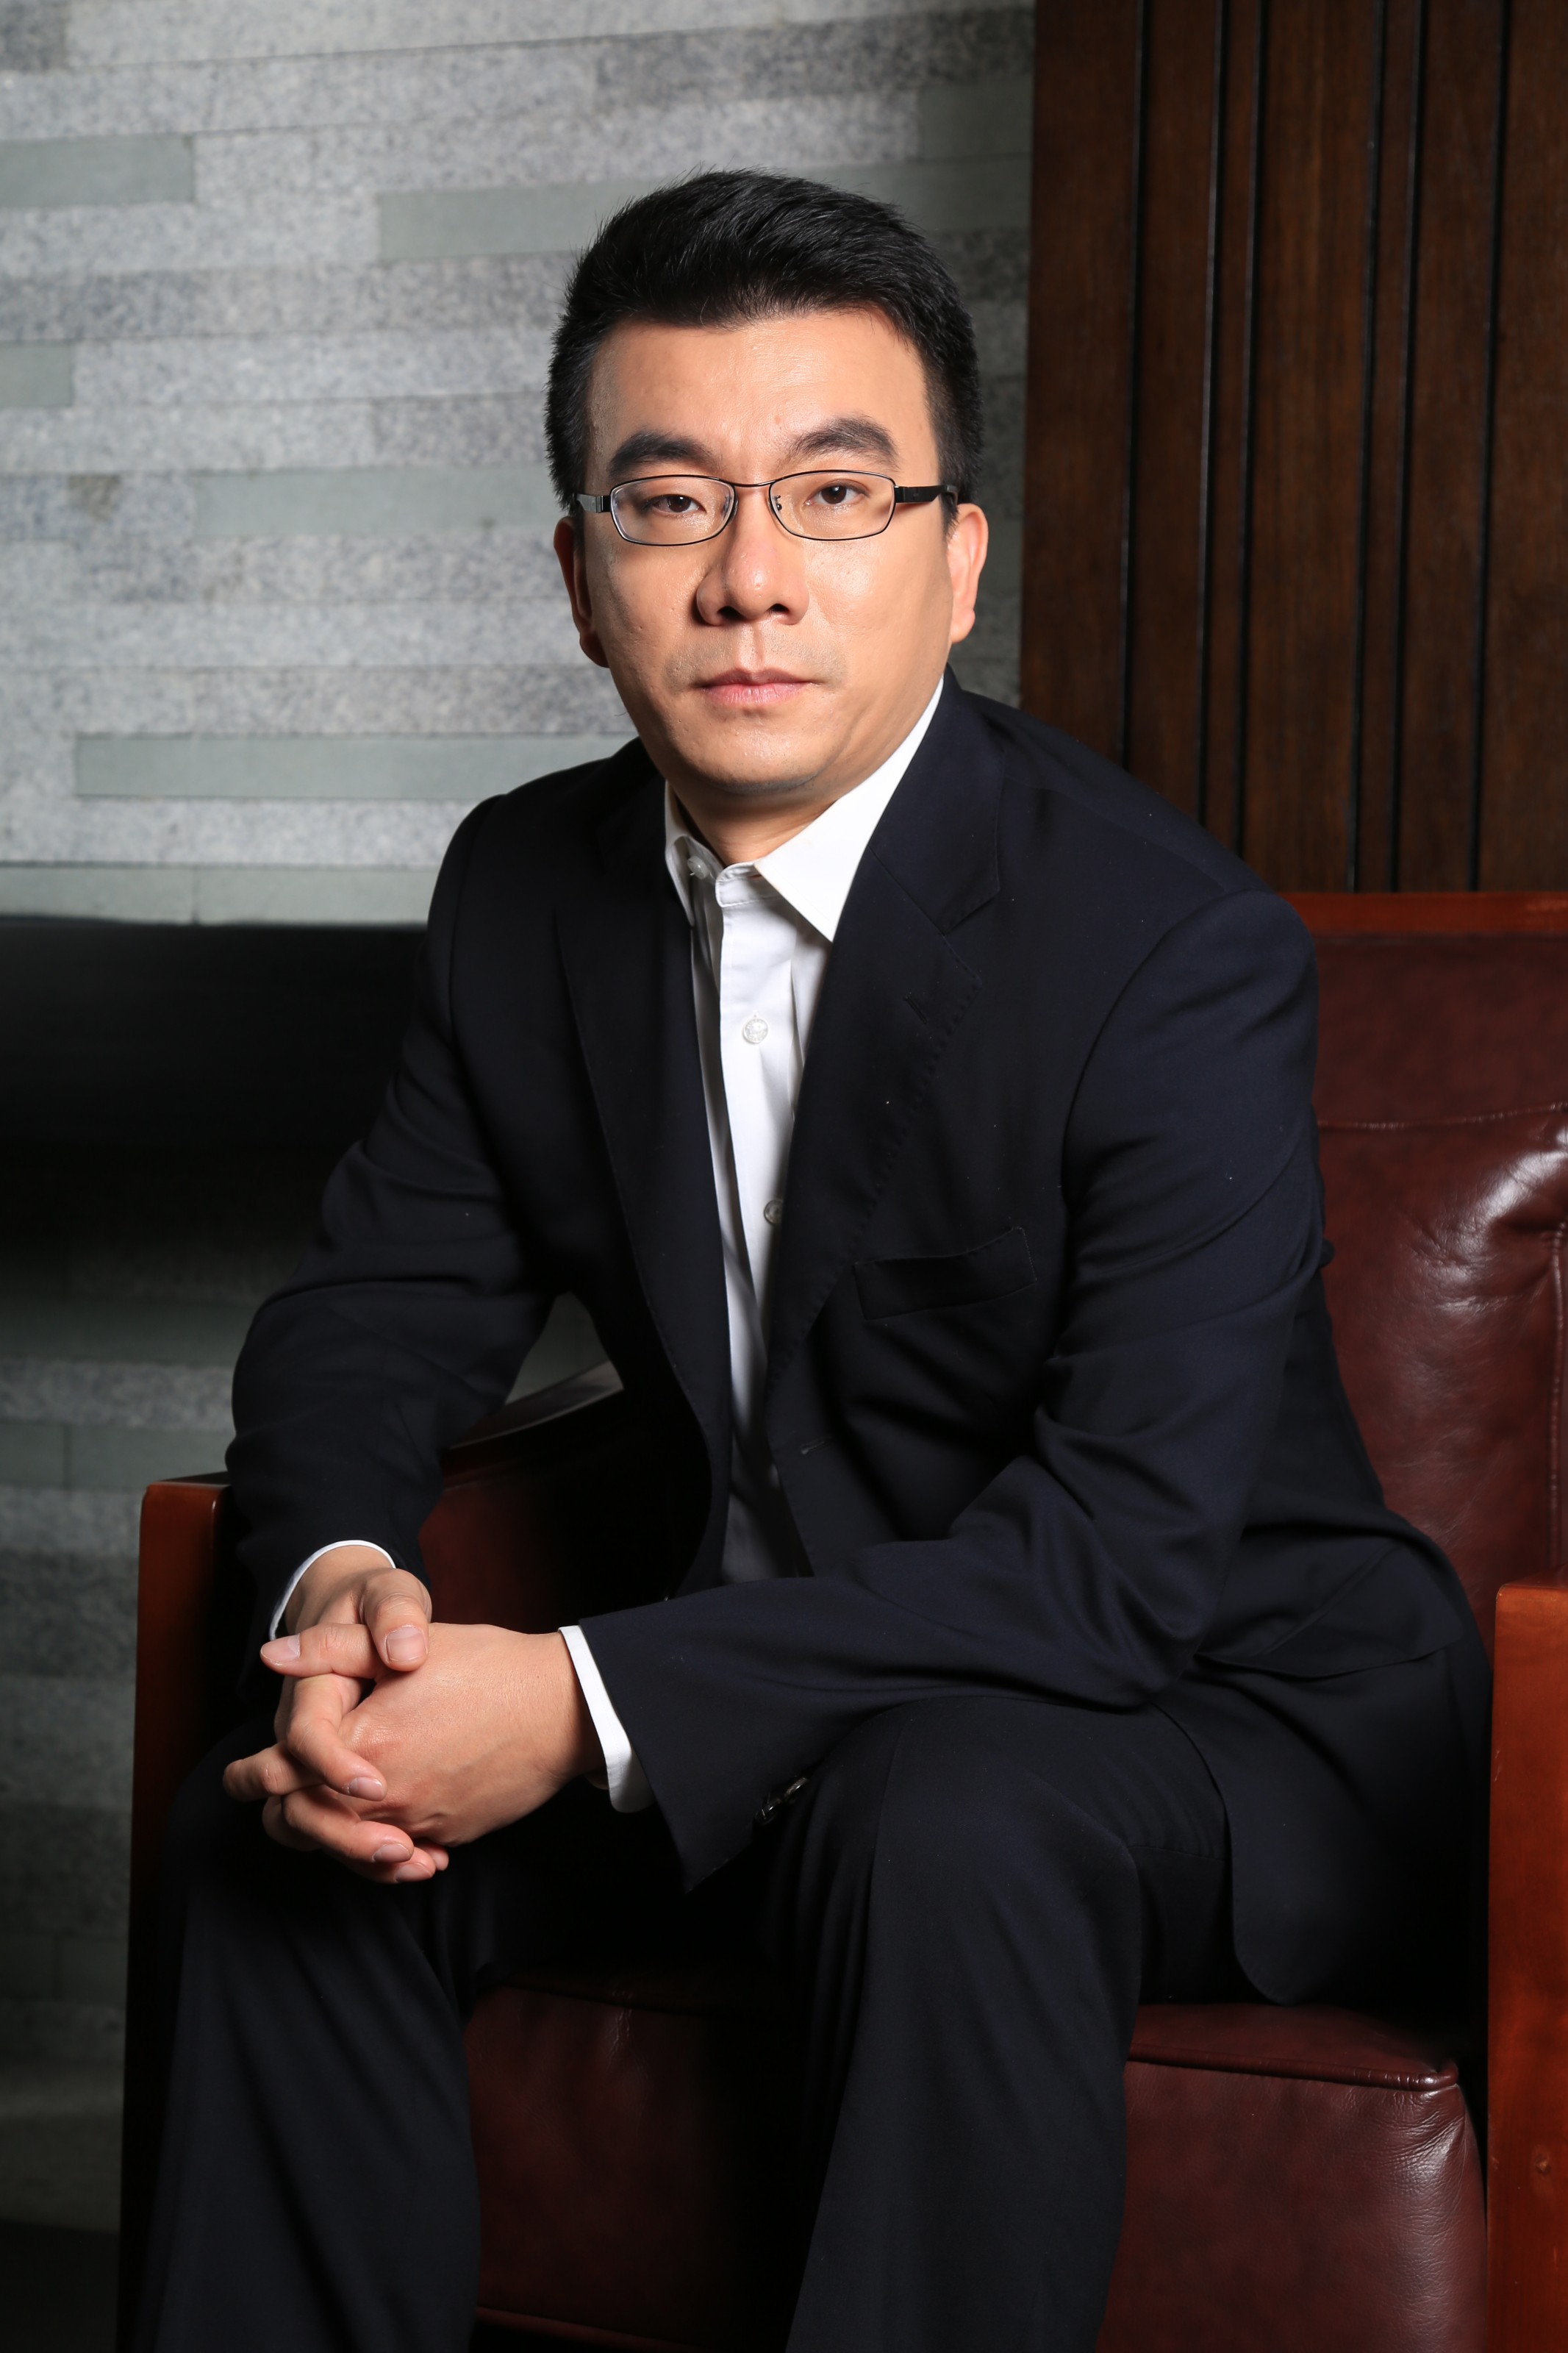 利欧数字CEO、MediaV总裁郑晓东先生照片3.JPG